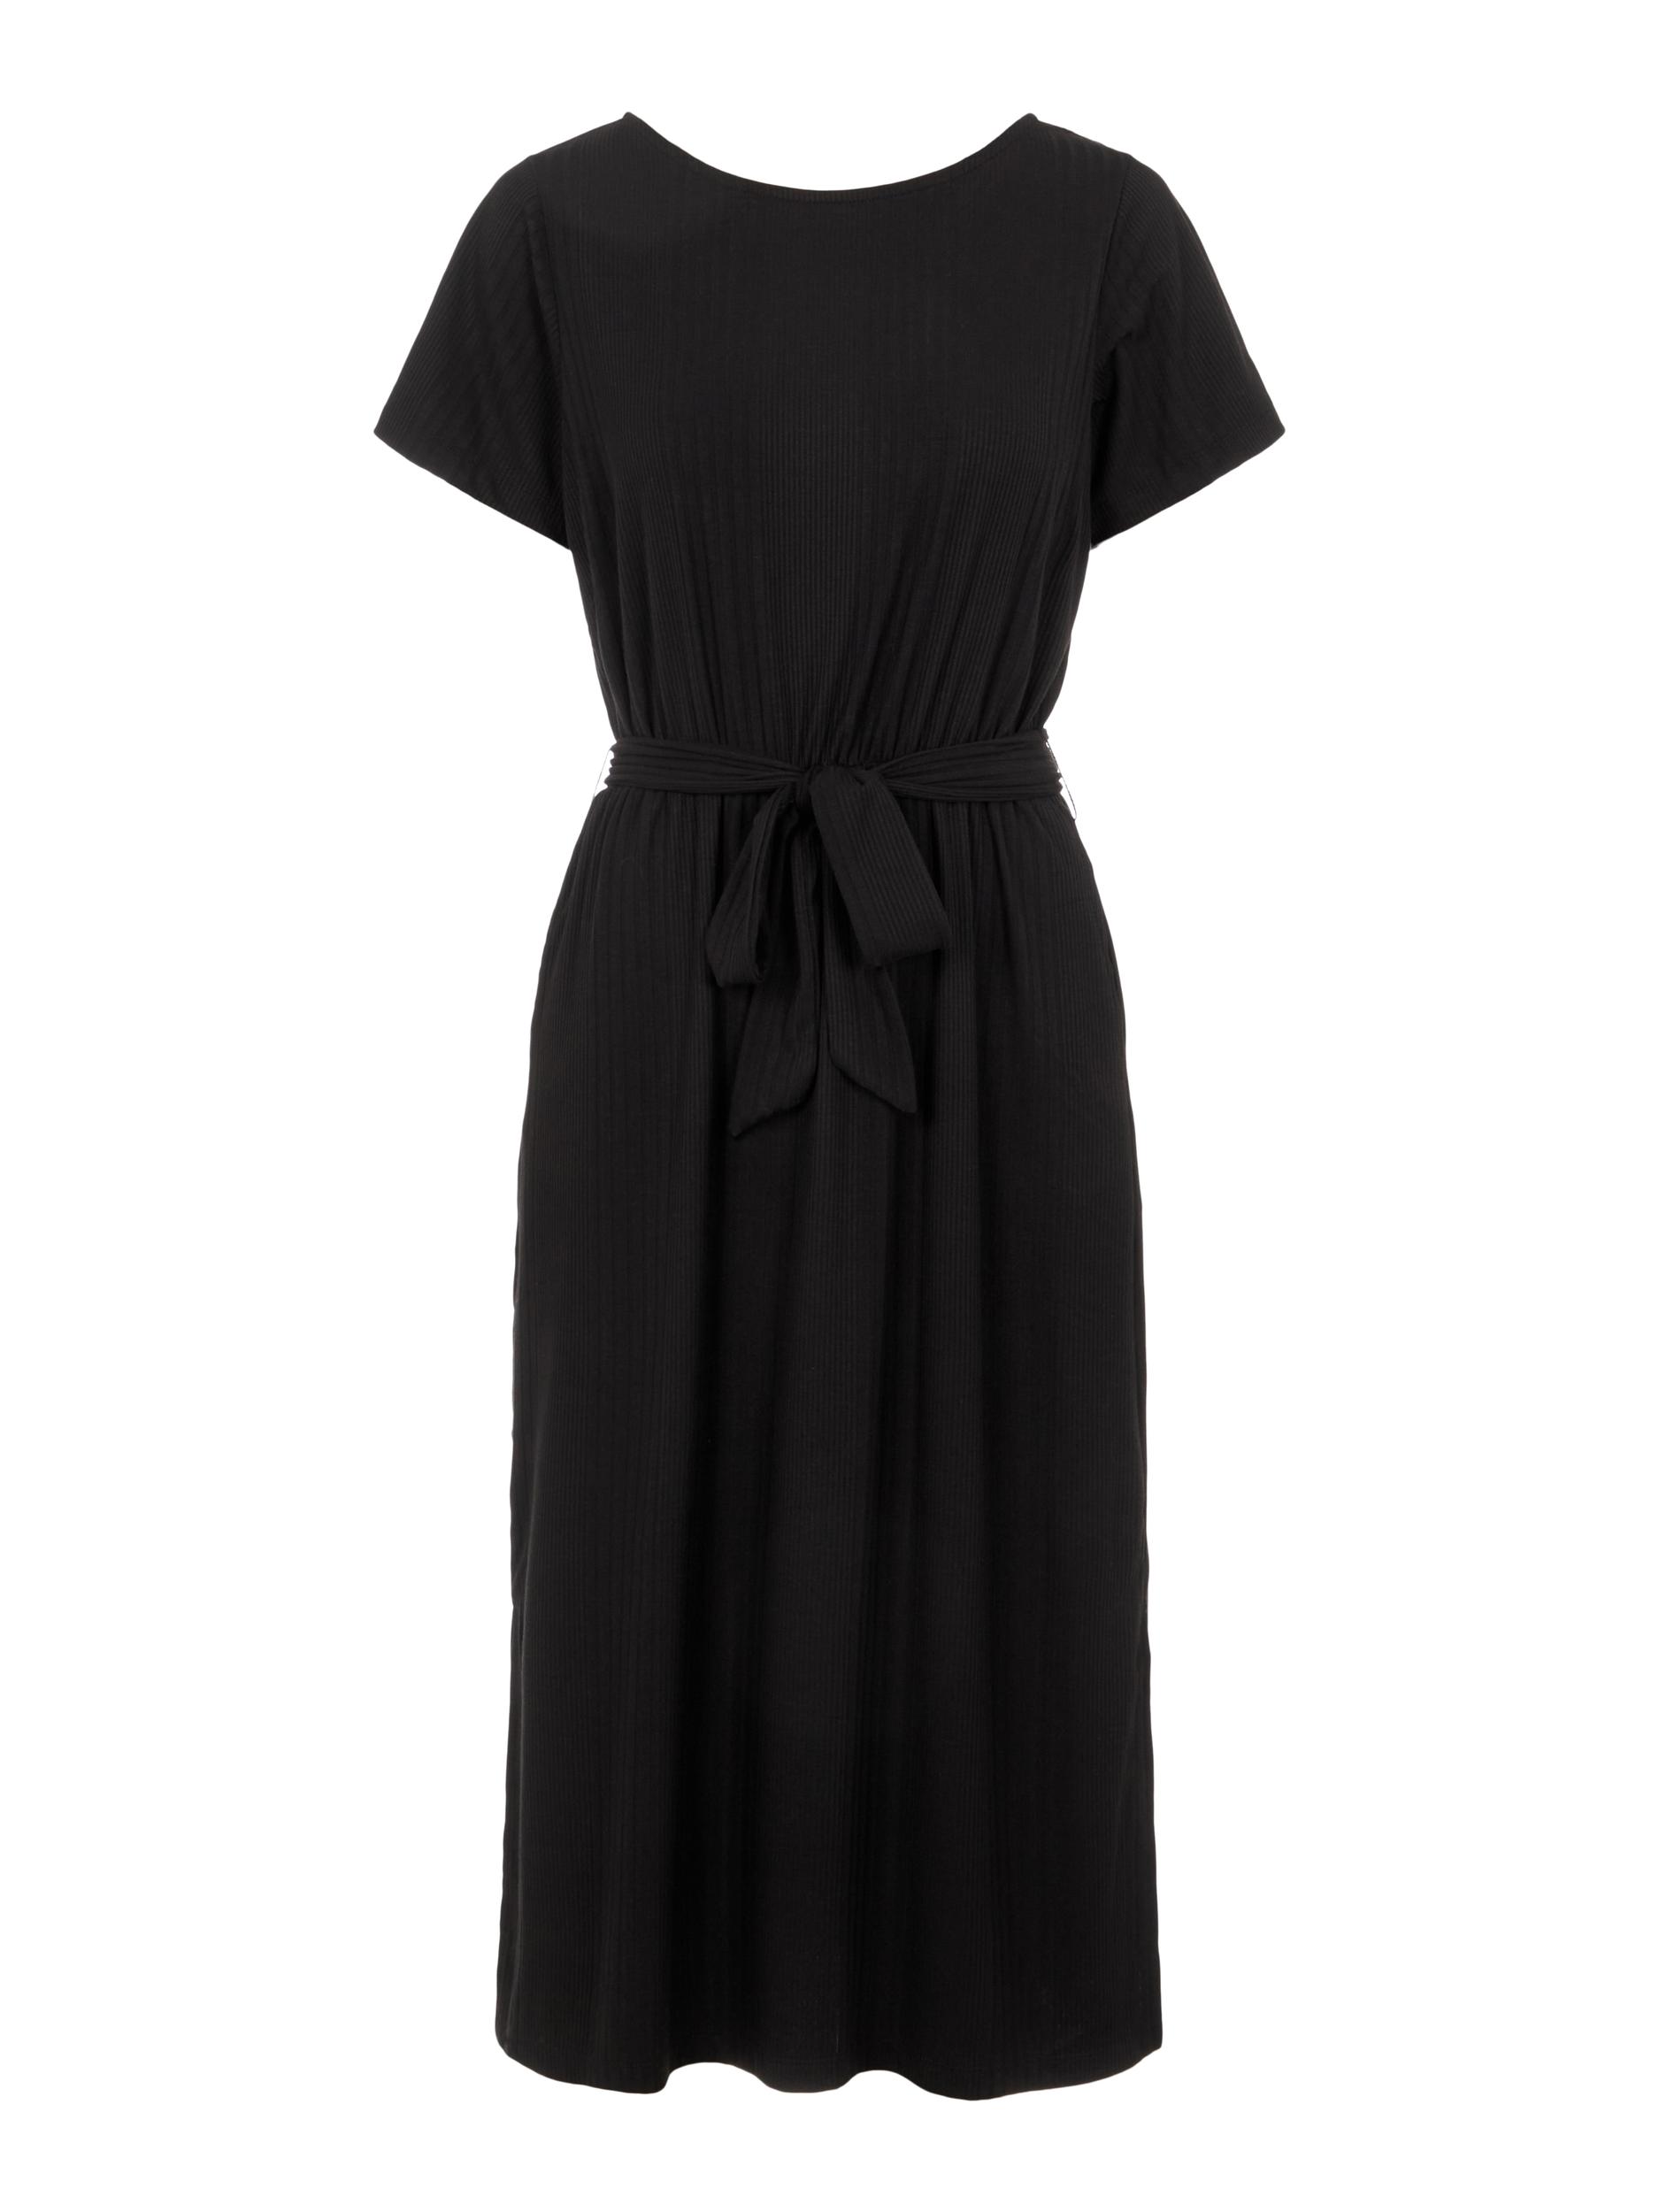 Odzież Kobiety OBJECT Sukienka Objcelia w kolorze Czarnym 